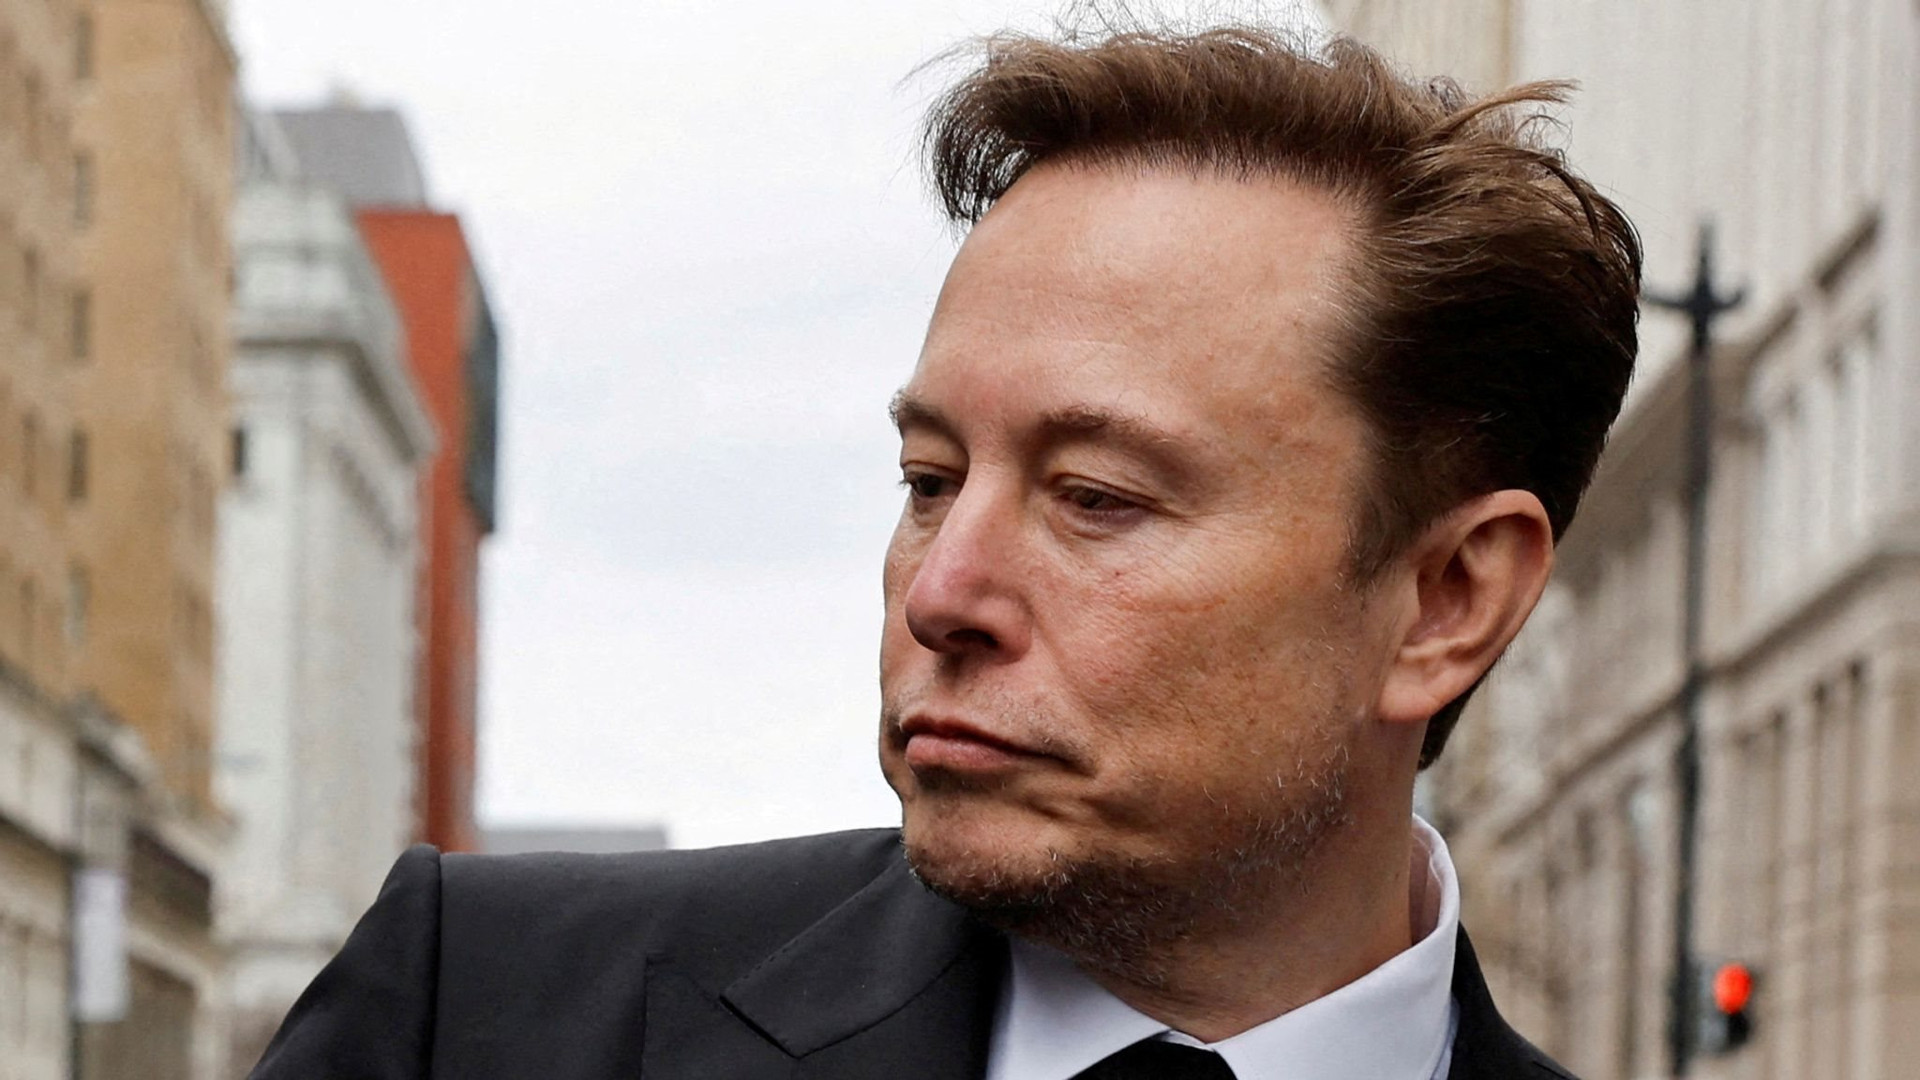 Elon Musk vừa trải qua ngày thứ 5 đen đủi nhất: Tên lửa SpaceX phát nổ sau 4 phút phóng, tài sản 'bay' 13 tỷ USD khi cổ phiếu Tesla lao dốc không phanh - Ảnh 1.